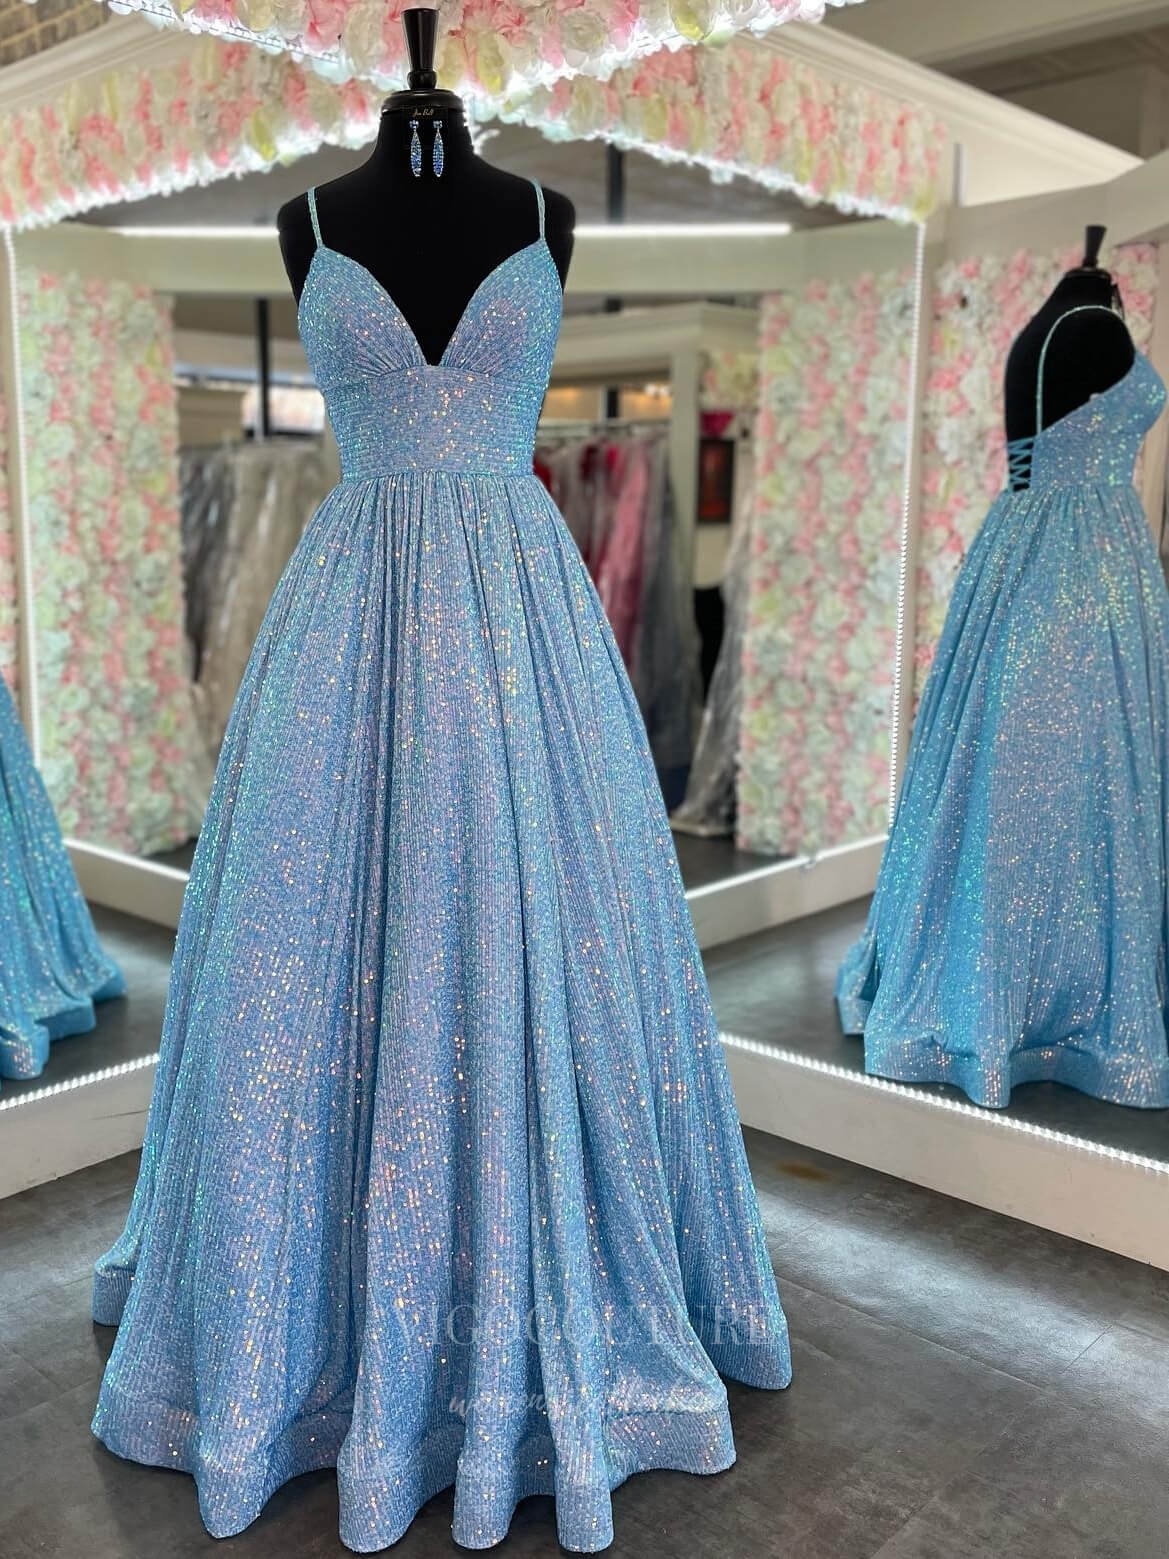 vigocouture-Sparkly Sequin Spaghetti Strap Prom Dress 20974-Prom Dresses-vigocouture-Light Blue-US2-